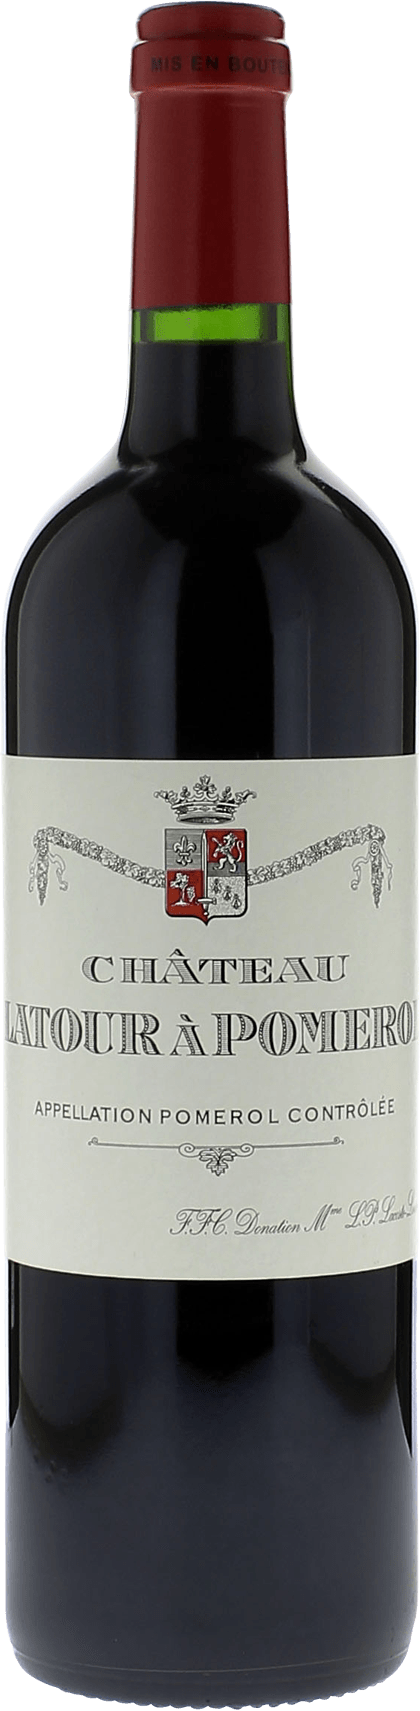 Latour  pomerol 2011  Pomerol, Bordeaux rouge